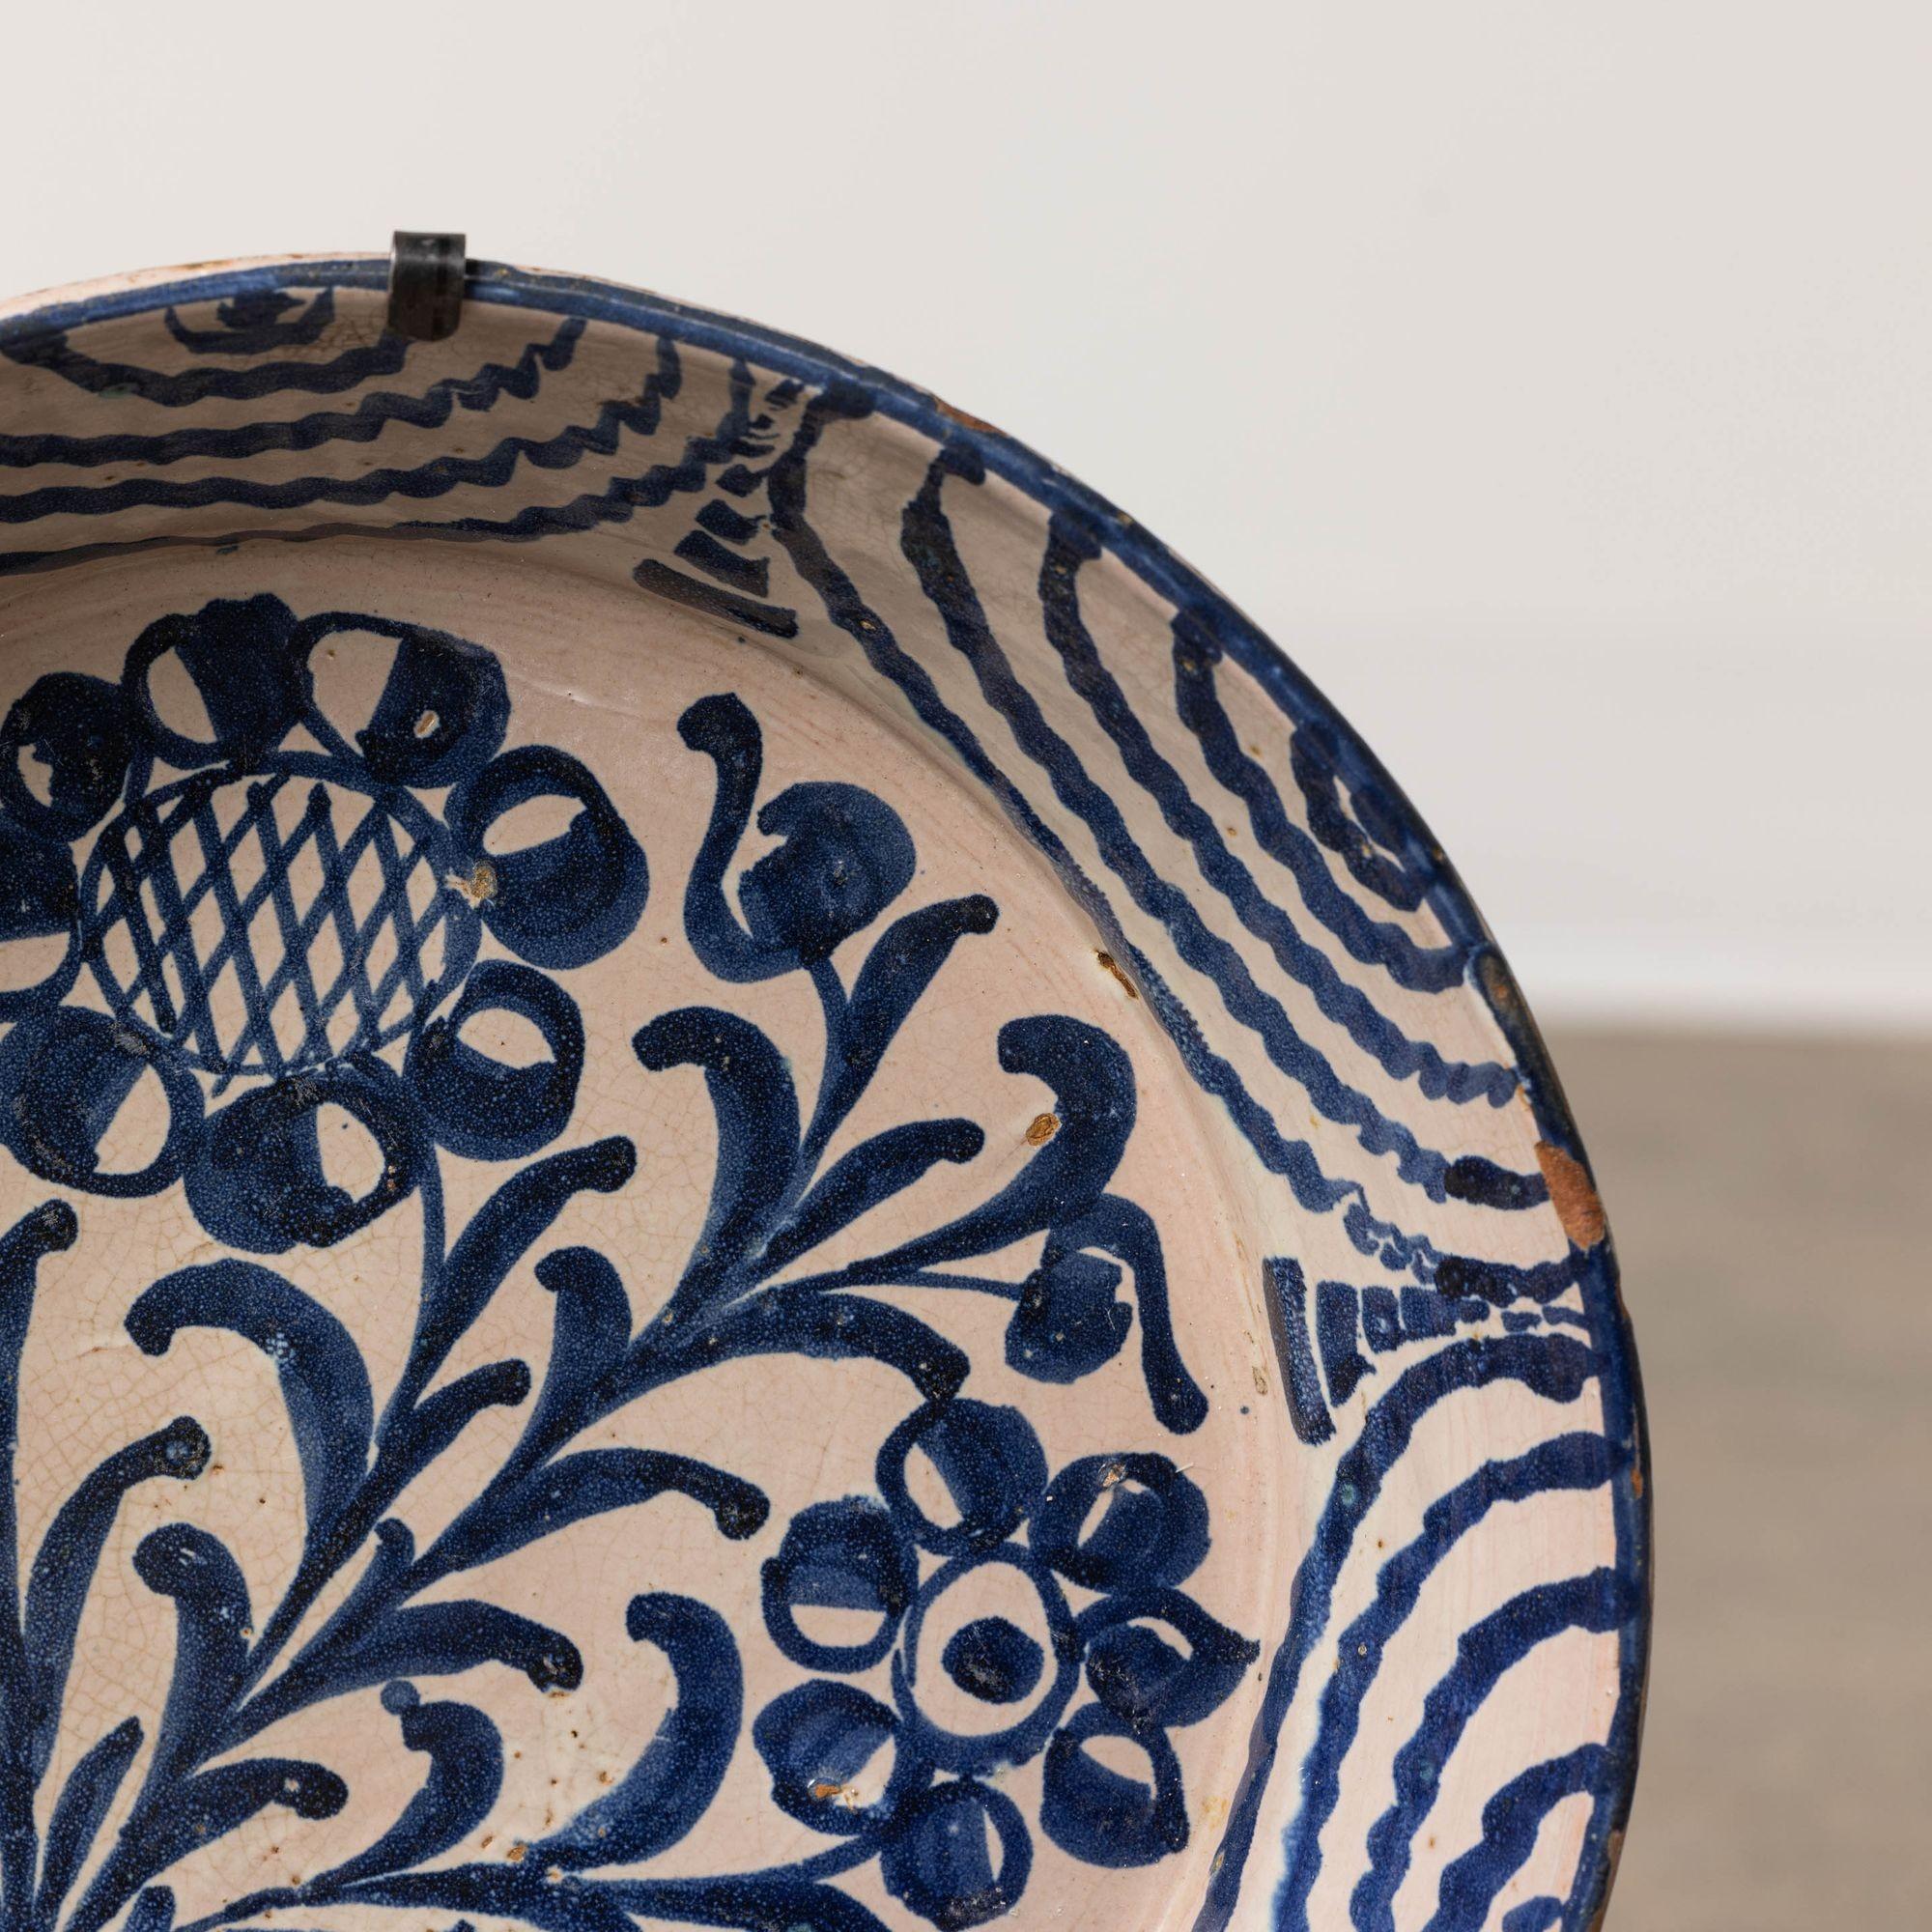 19th Century 19th c. Spanish Blue and White Fajalauza Lebrillo Bowl from Granada For Sale